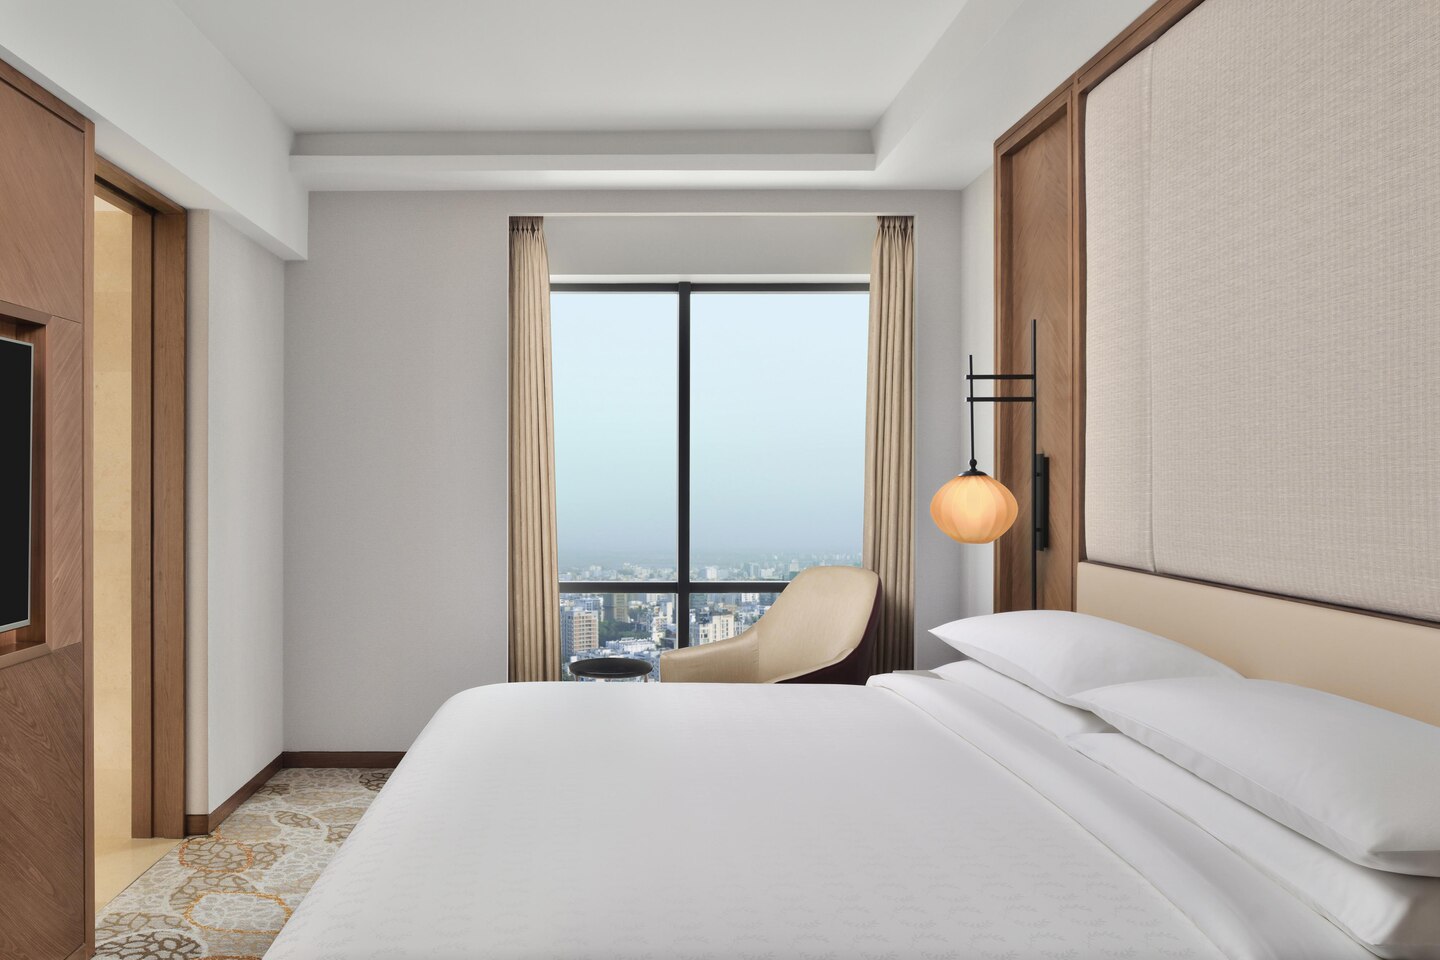 مشروع فندق الصين فندق كوين غرفة نوم مصنع تصميم حديث أثاث فندق جذاب